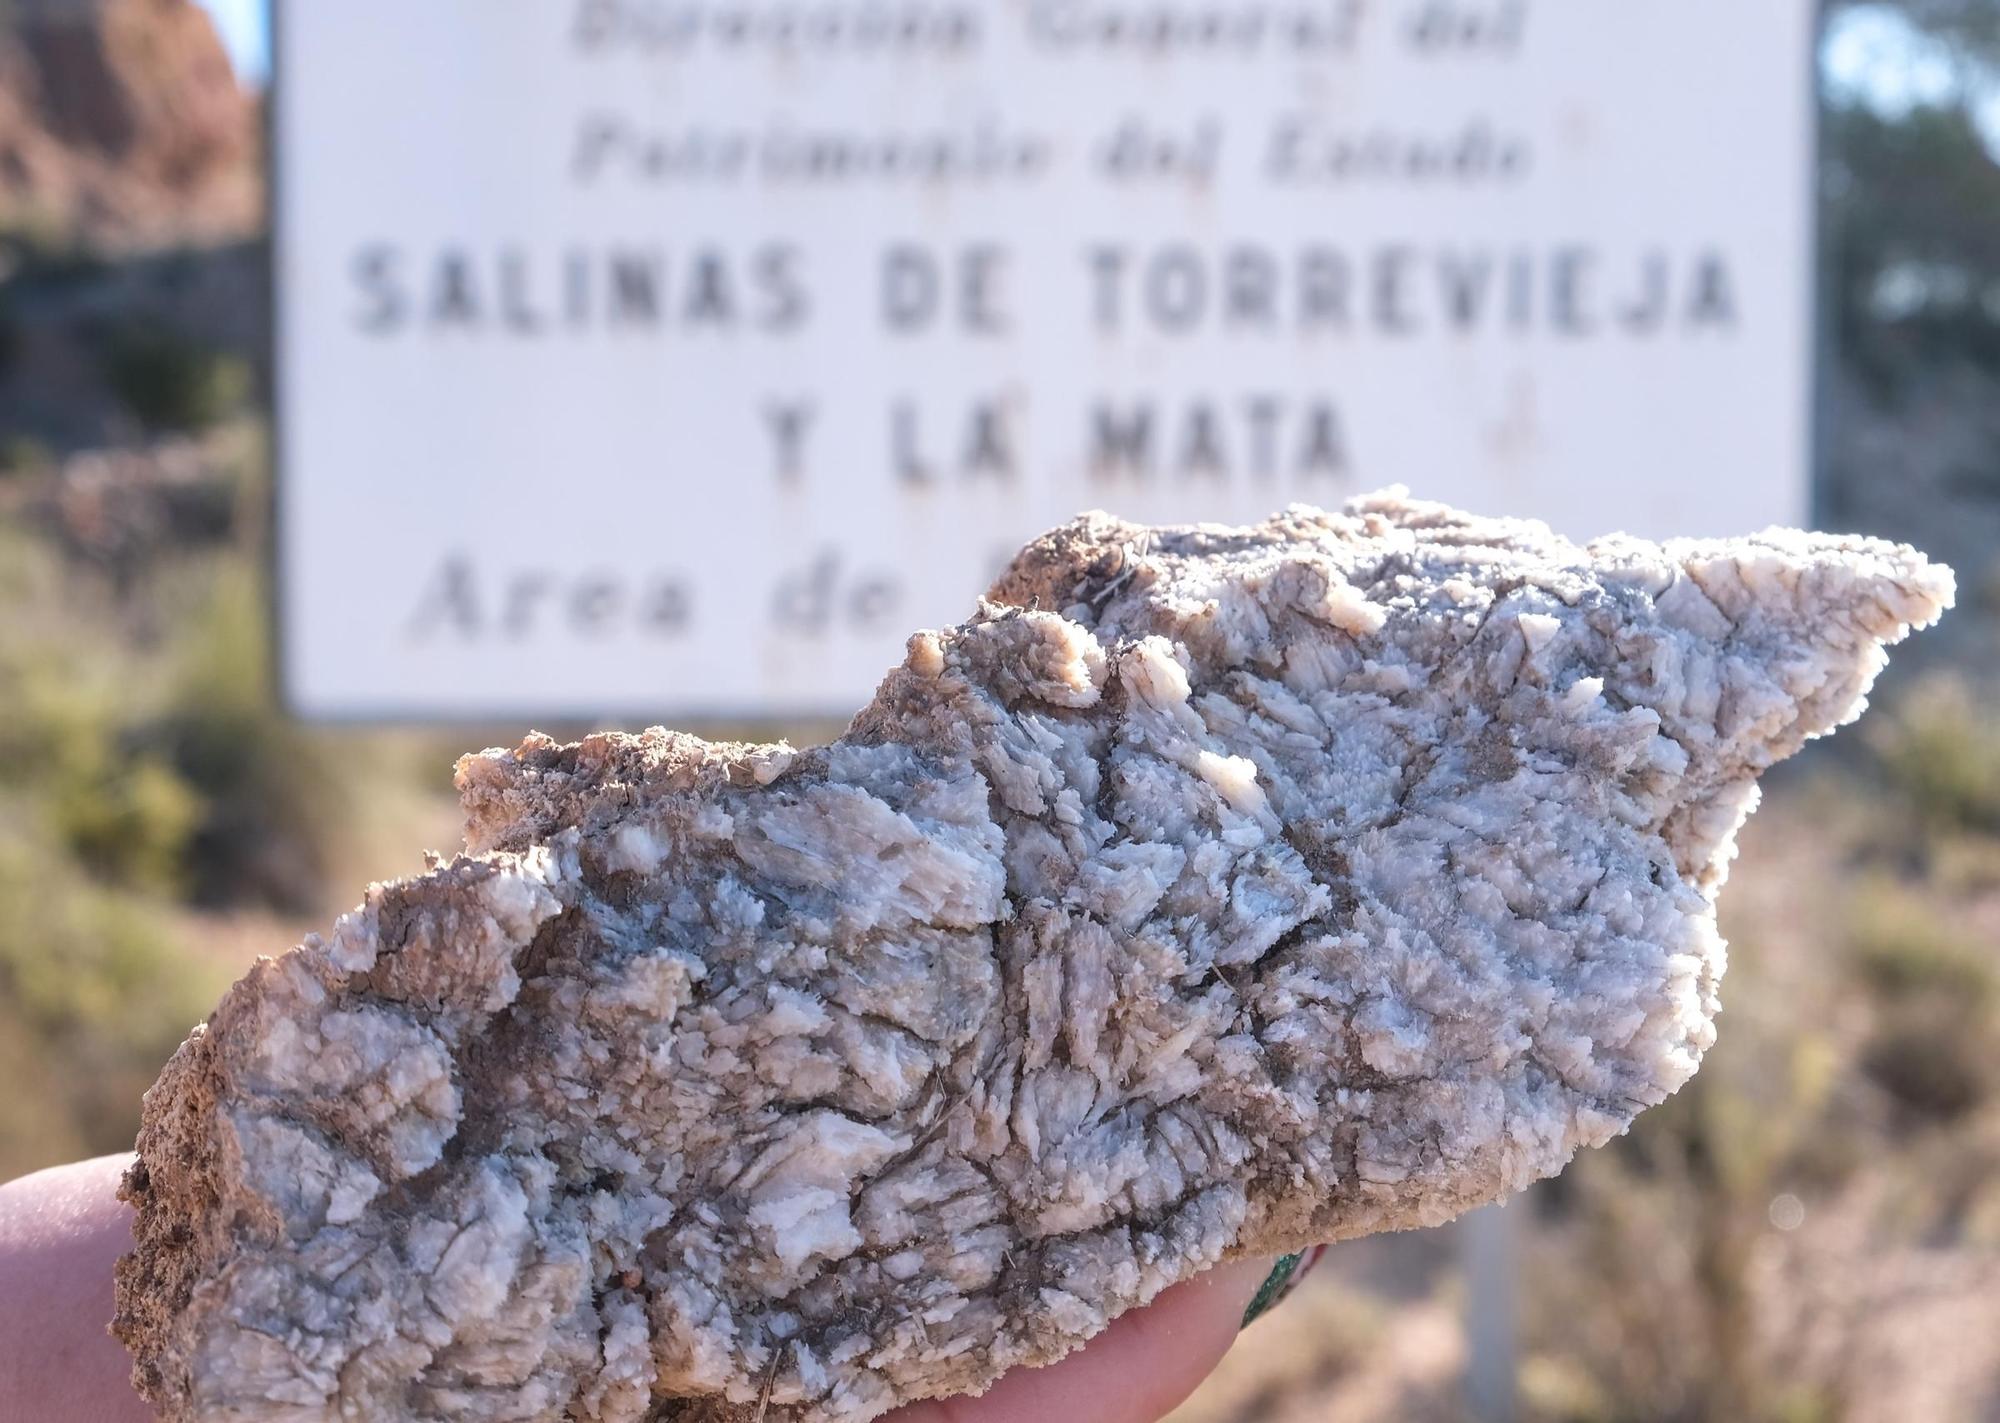 Así es el salmueroducto que traslada sal desde Pinoso hasta las Salinas de Torrevieja